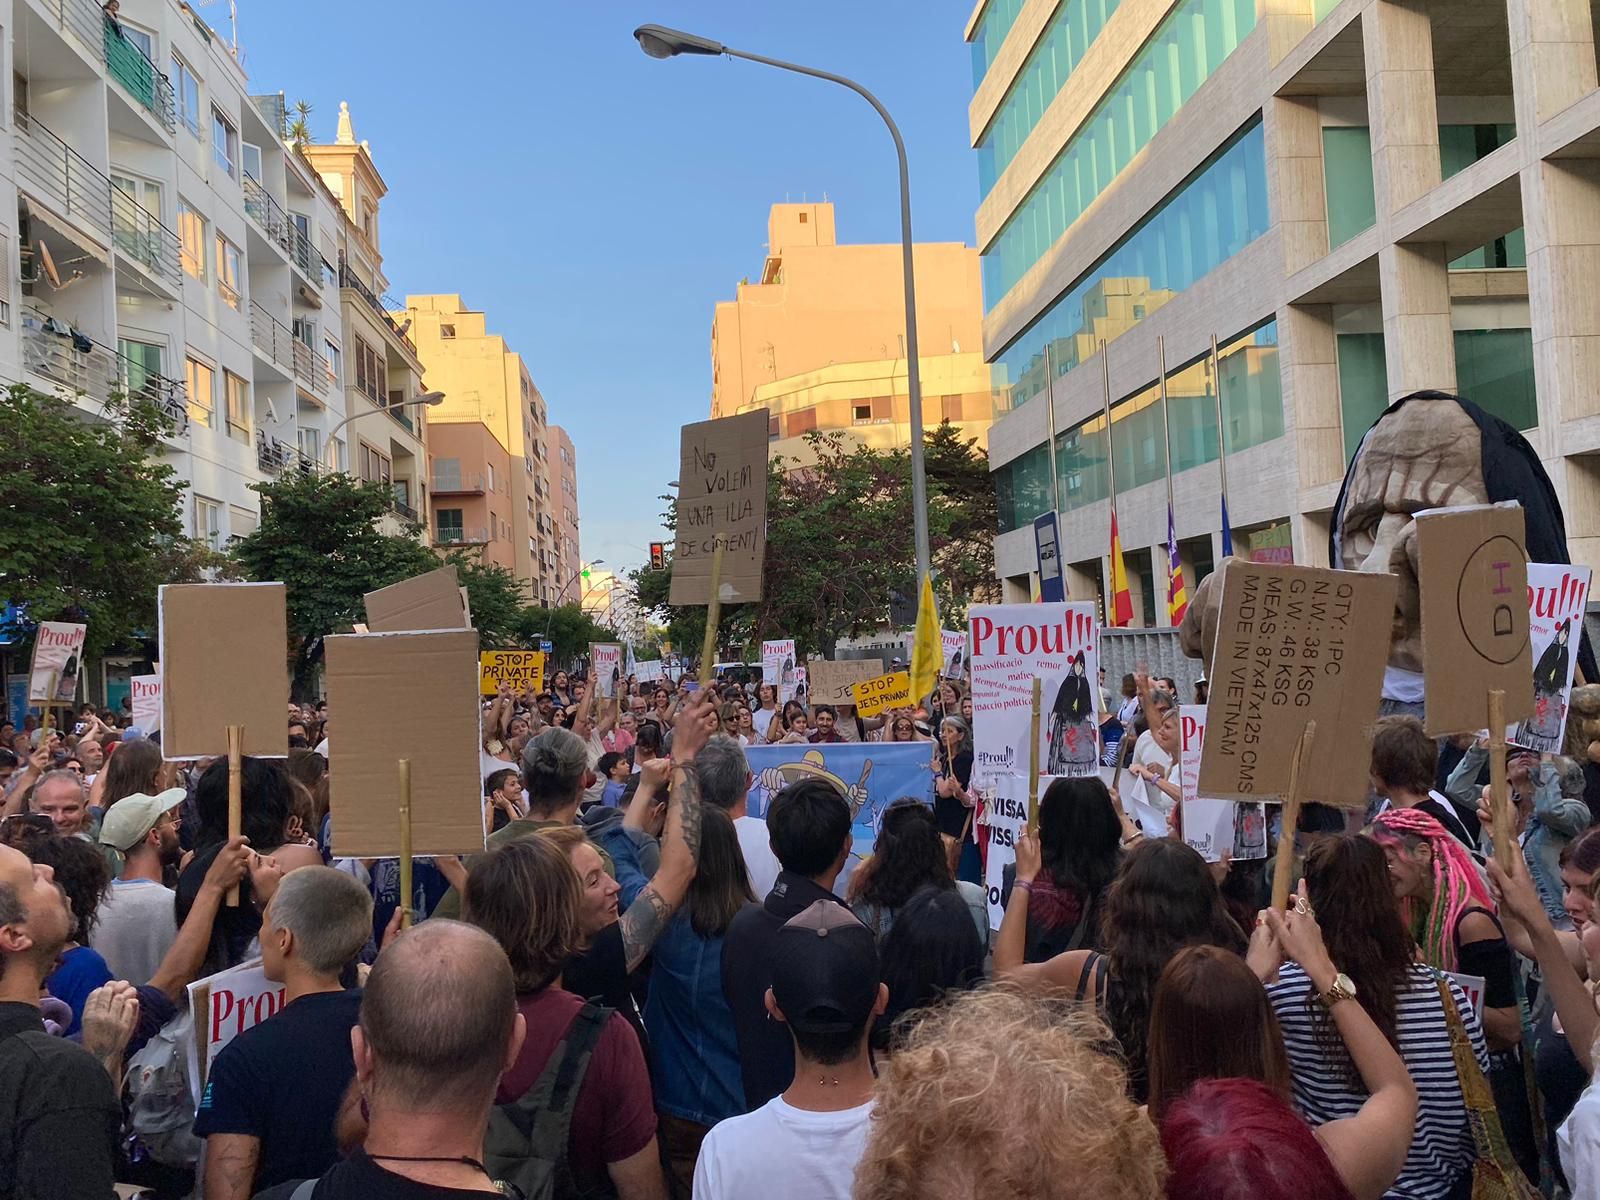 Arranca la protesta contra la masificación turística en Ibiza